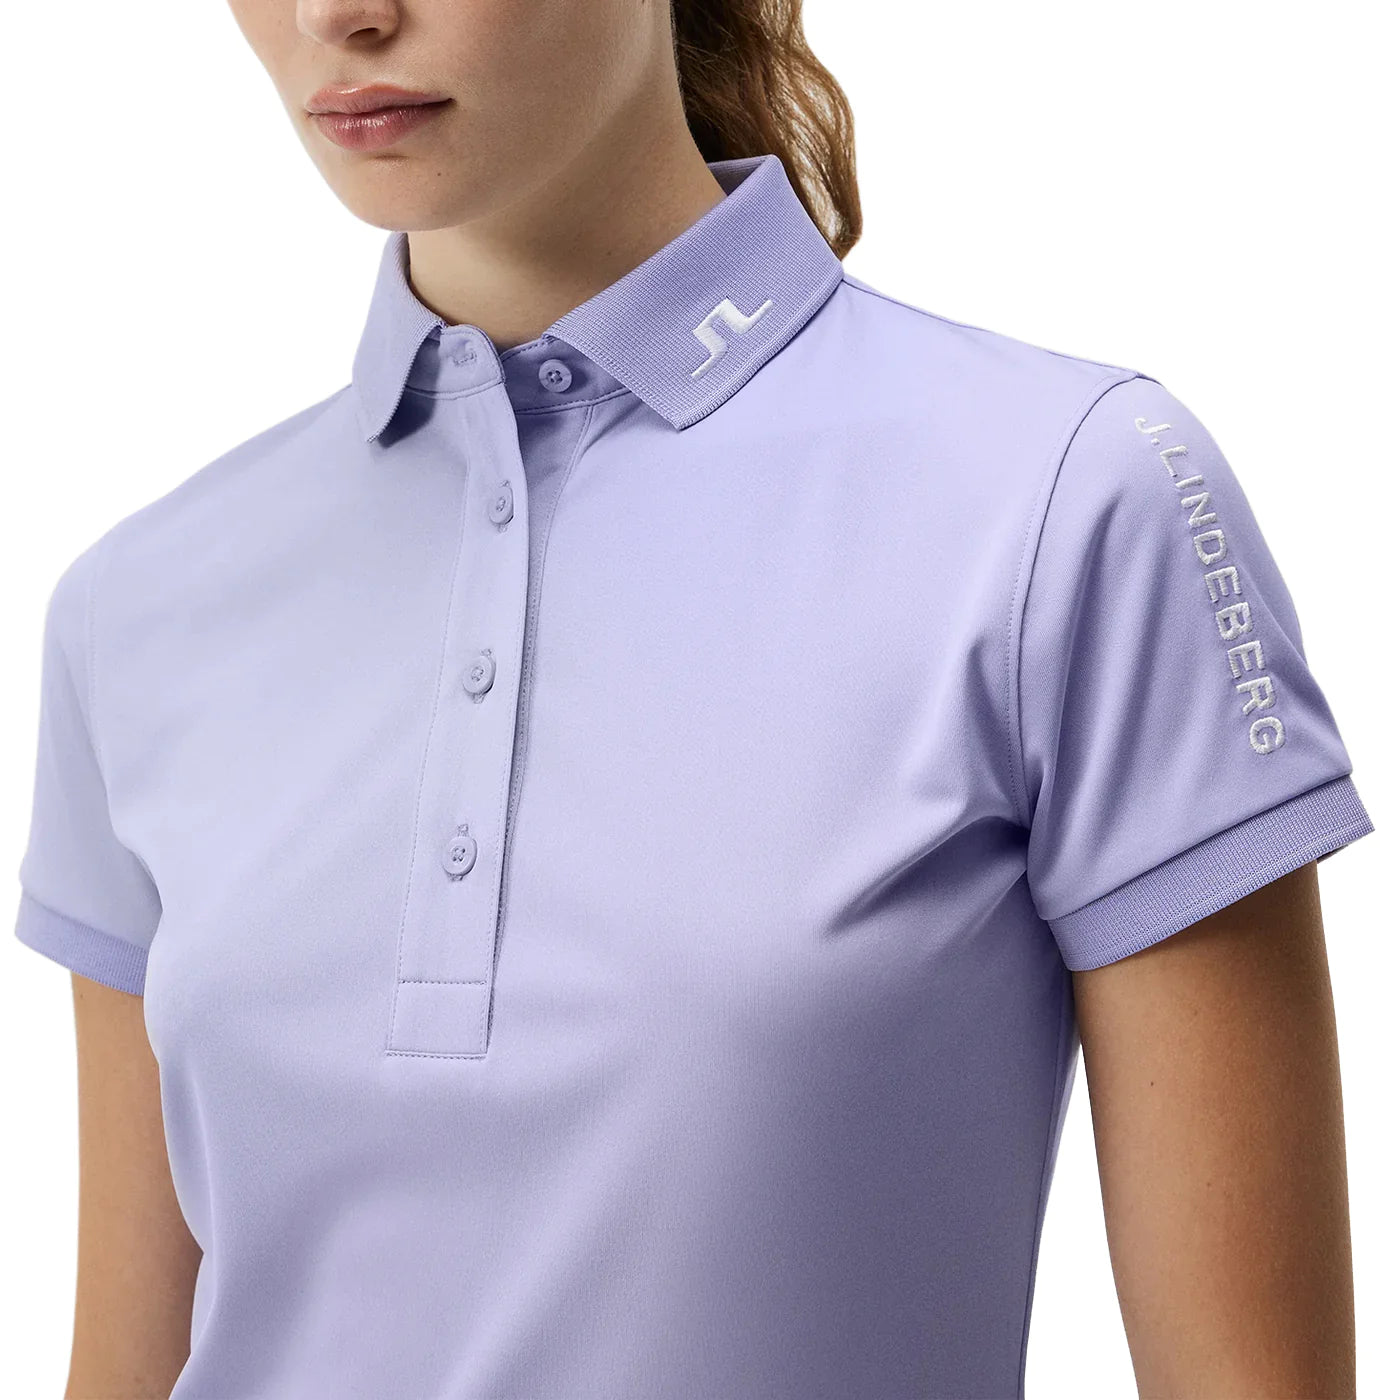 【.特價】J.LINDEBERG女款 Tour Tech 高爾夫 Polo 衫 - 甜薰衣草色GWJT08807